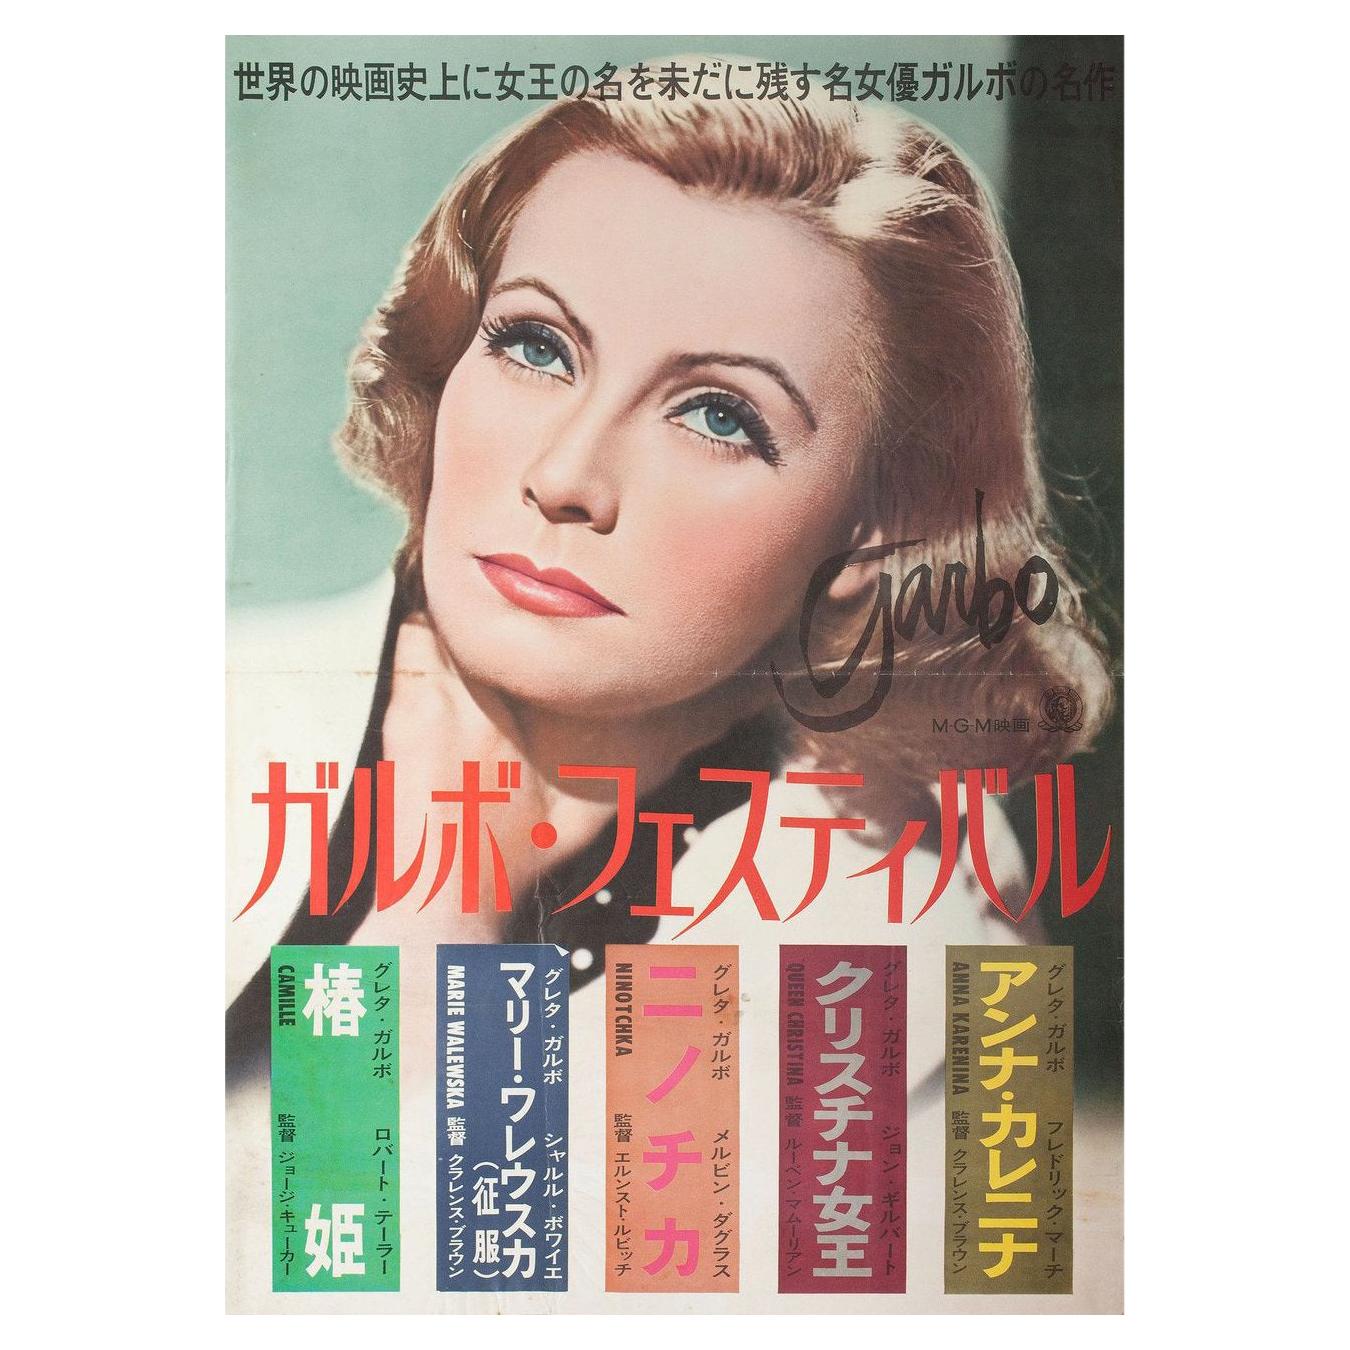 Garbo Festival 1960s Japanese B2 Poster